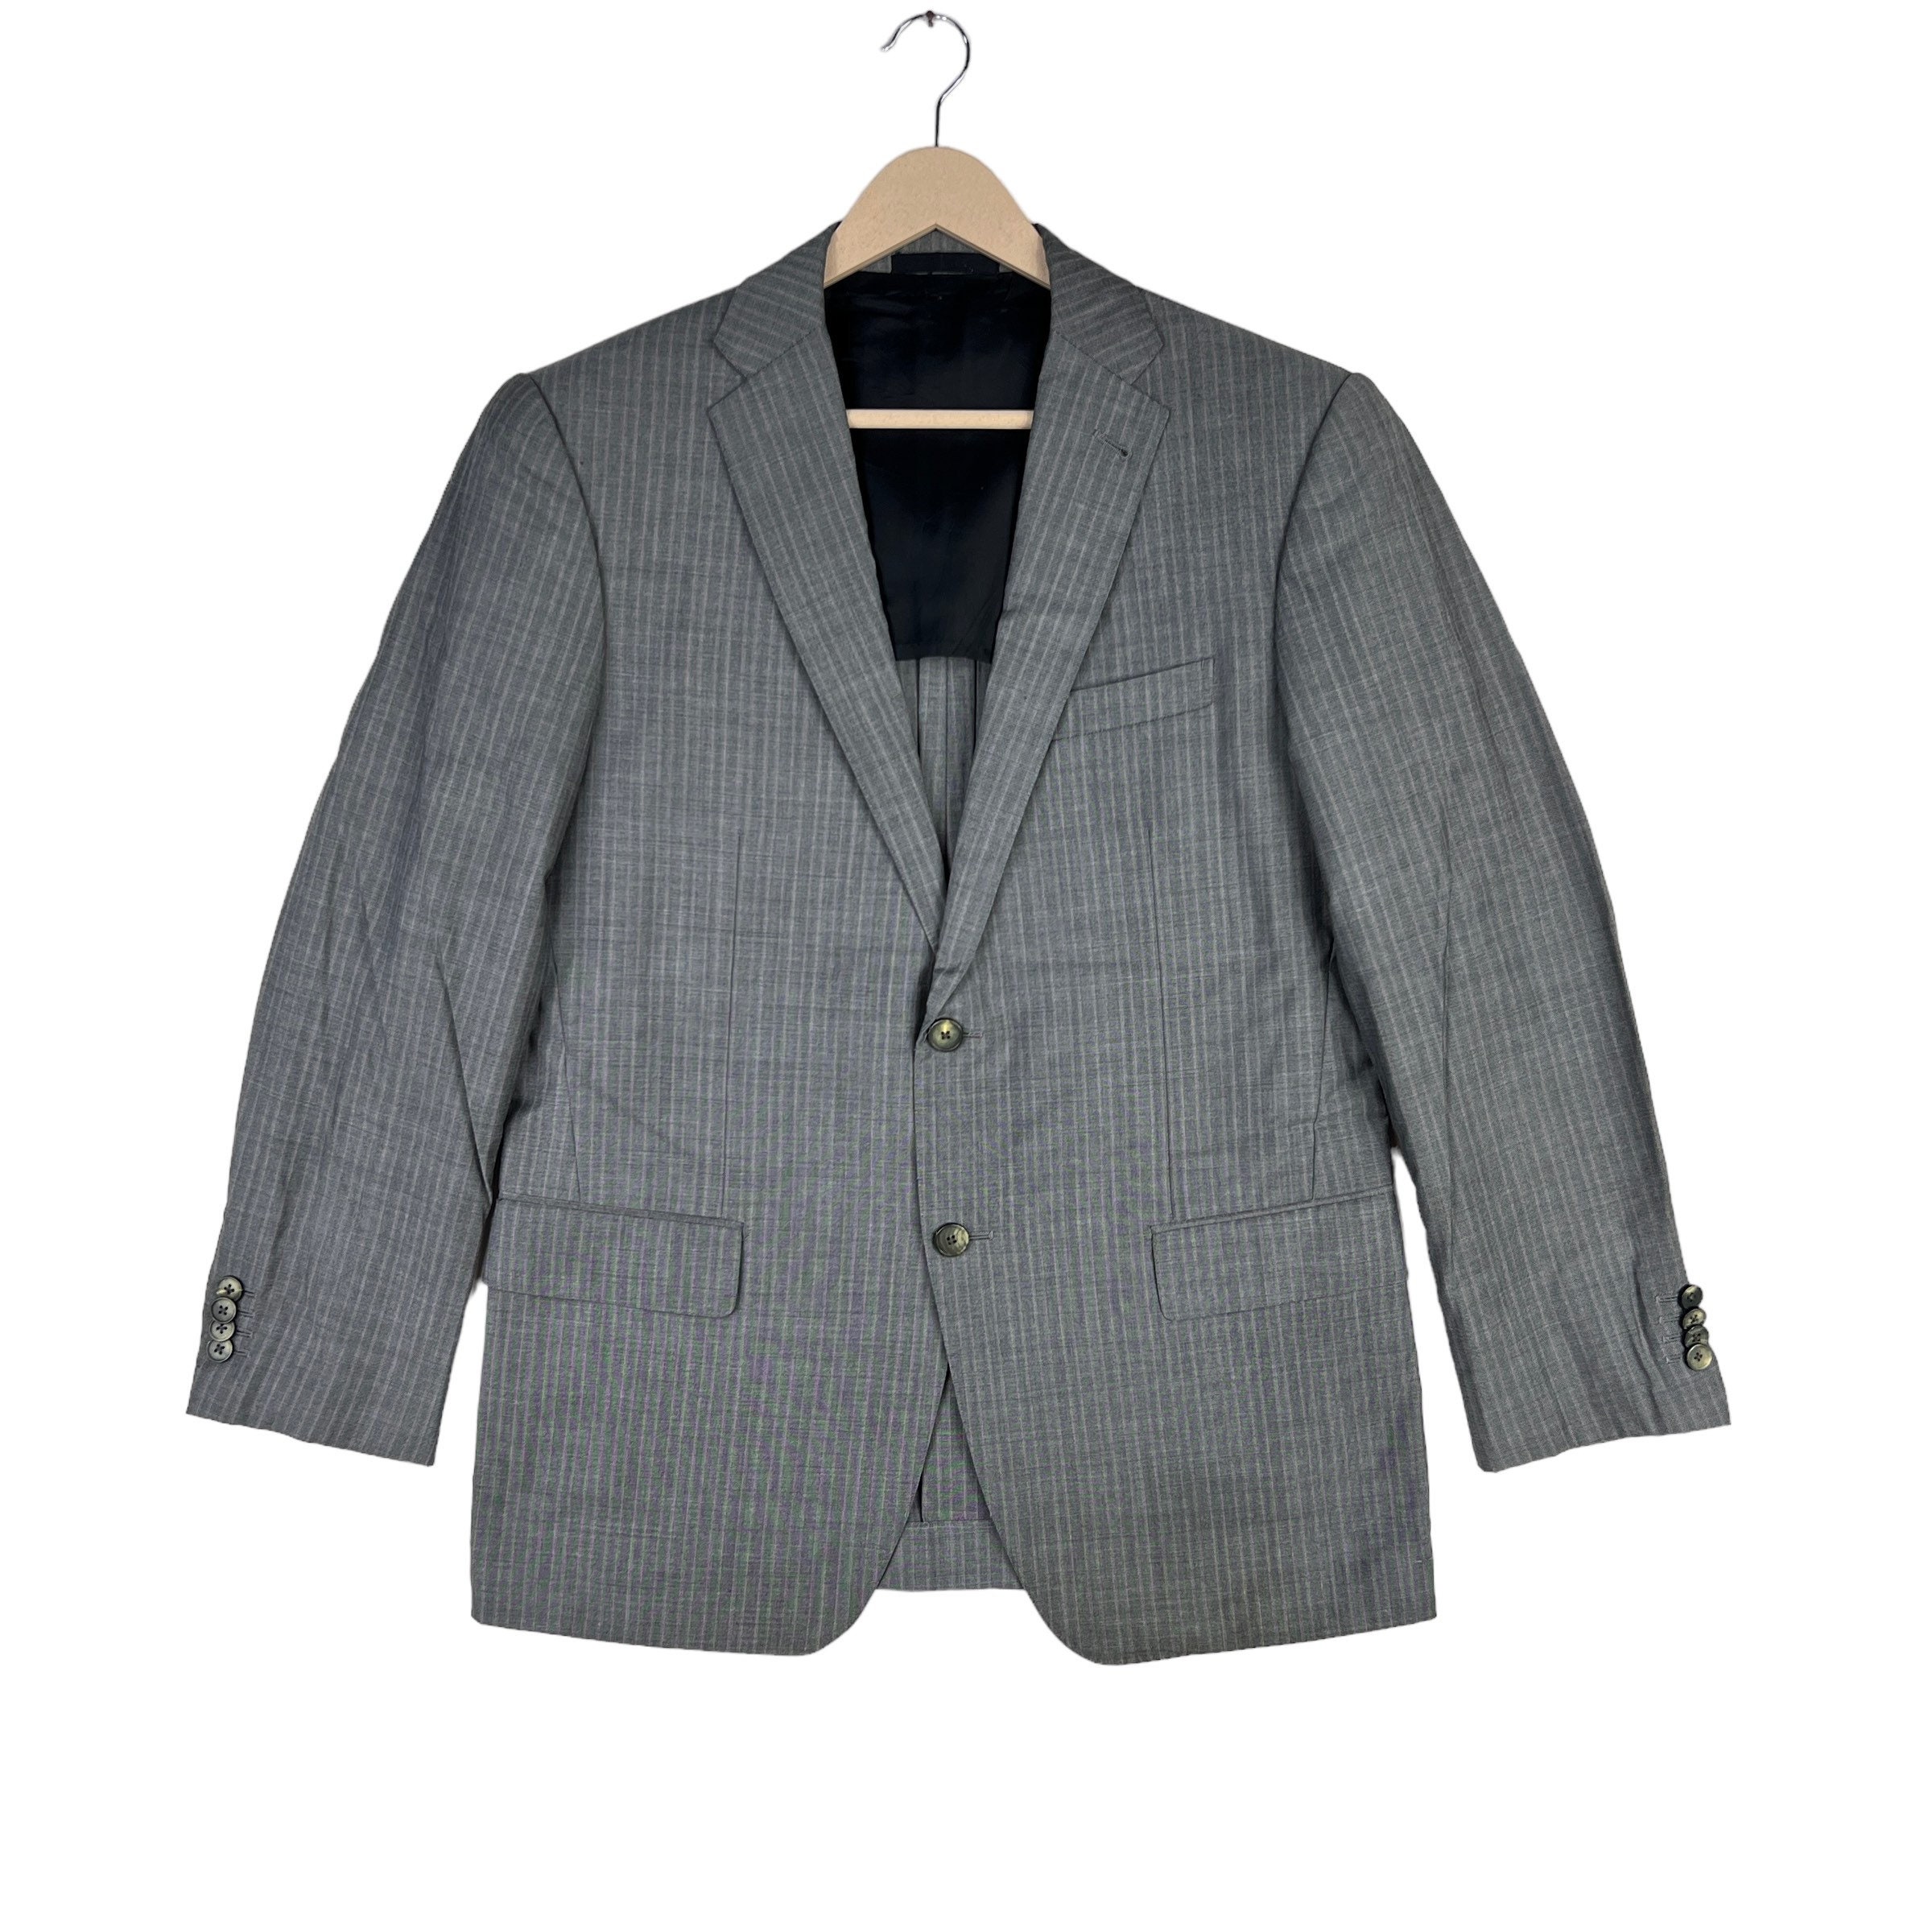 Authentic Louis Vuitton black uniform jacket blazer with pockets gold  buttons